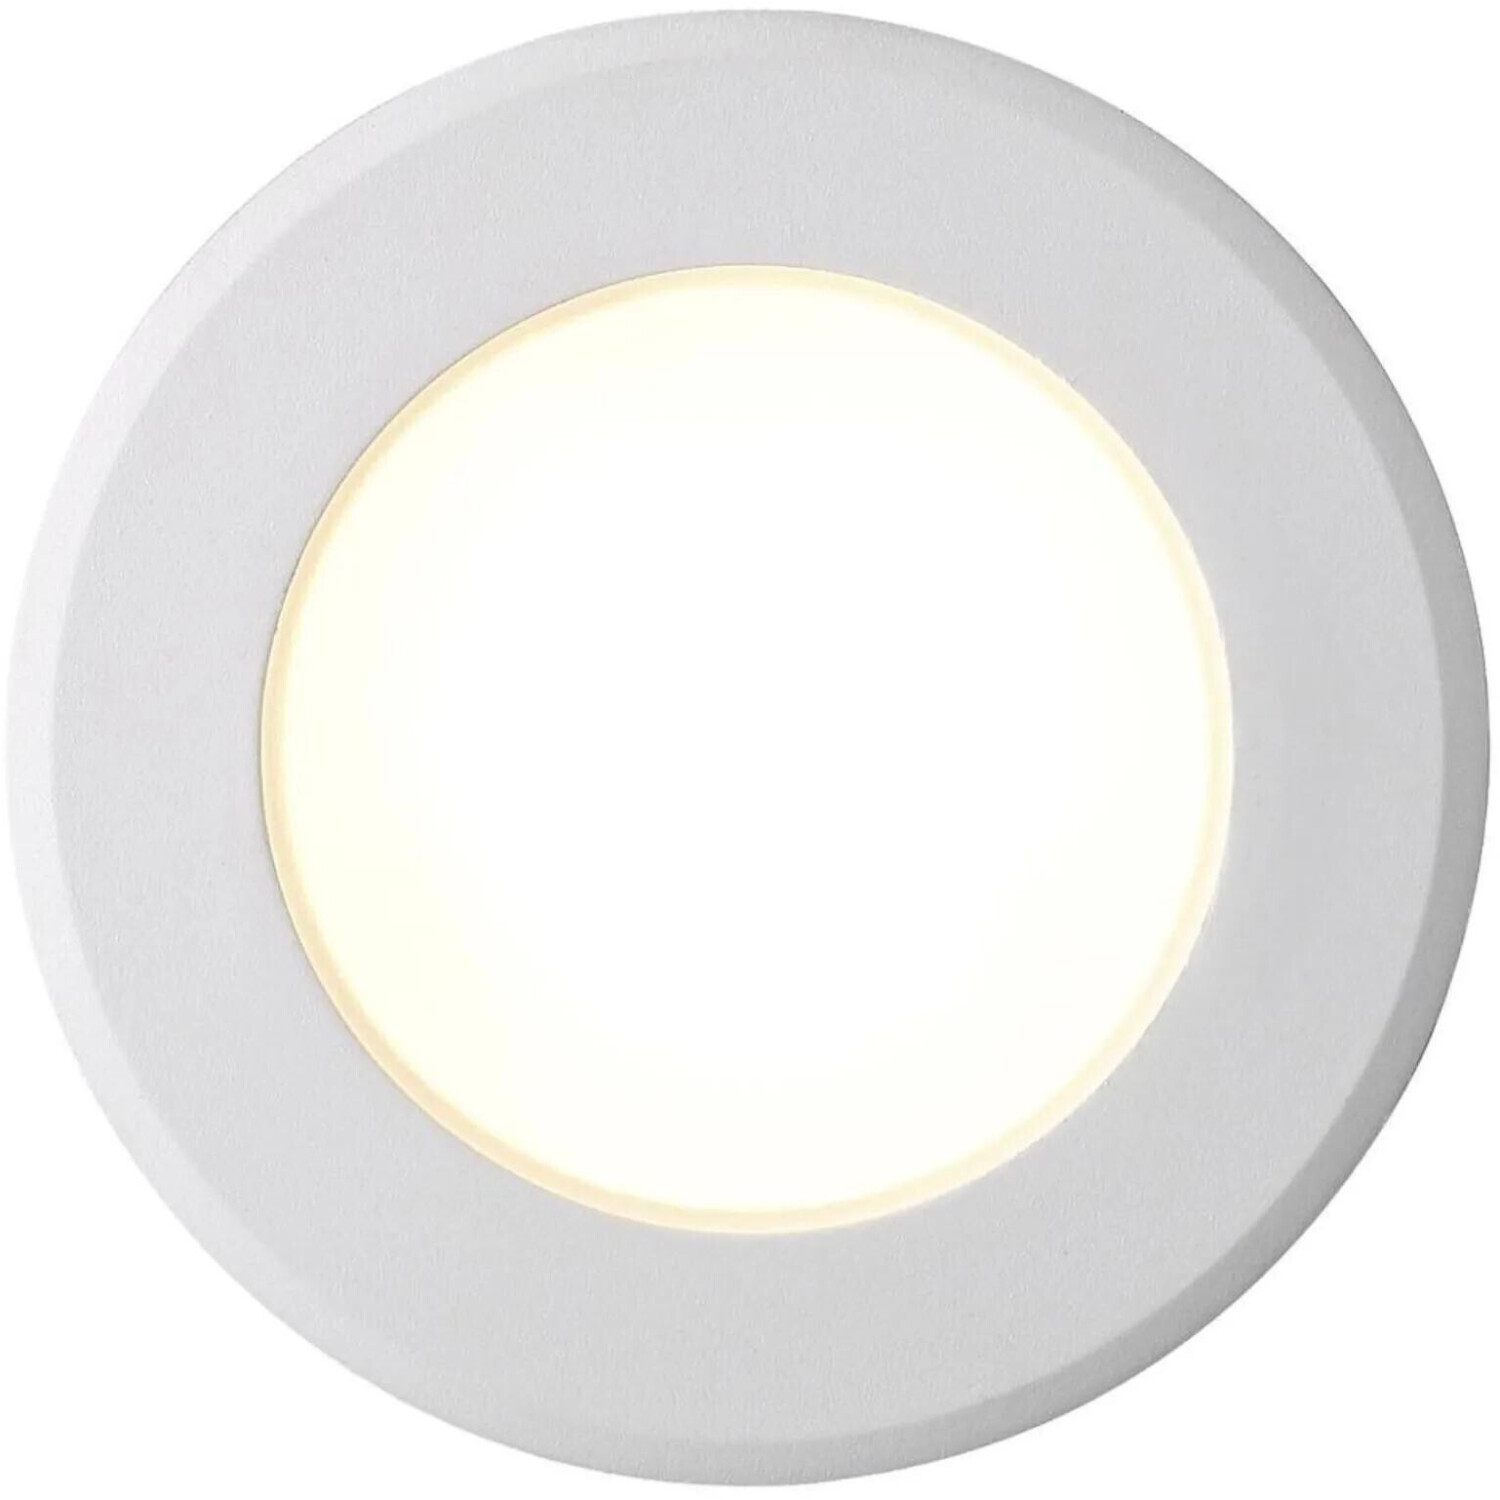 Nordlux LED Deckeneinbauspot Birla weiß weiß Preisvergleich ab bei € IP44 dimmbar 13,95 